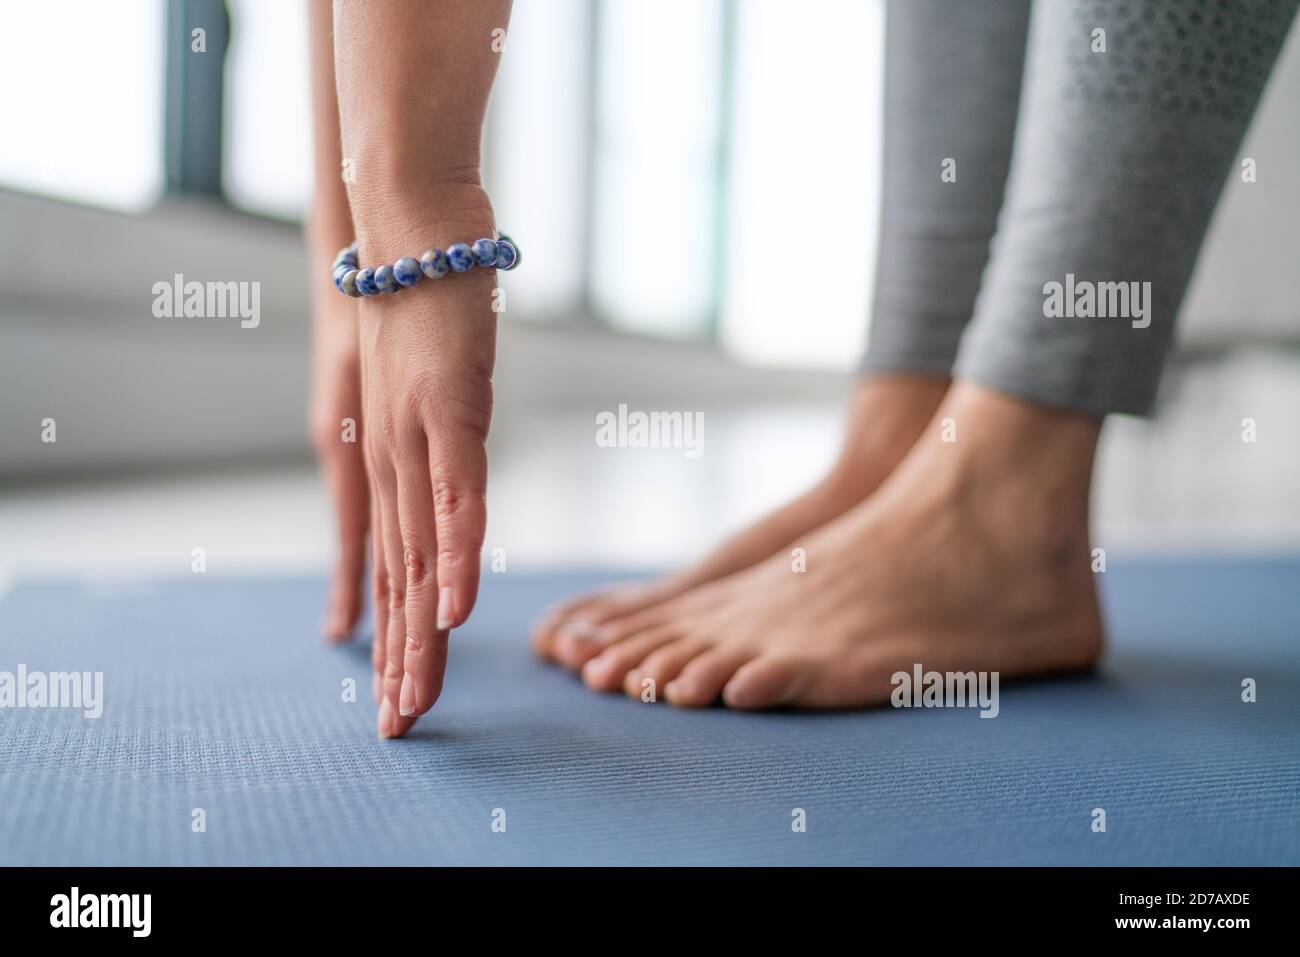 Yoga im Fitness Studio - Yogi Lehrer Stretching in vinyasa Yoga-Klasse. Nahaufnahme der Hände mit blauem Armband und Füßen Stockfoto